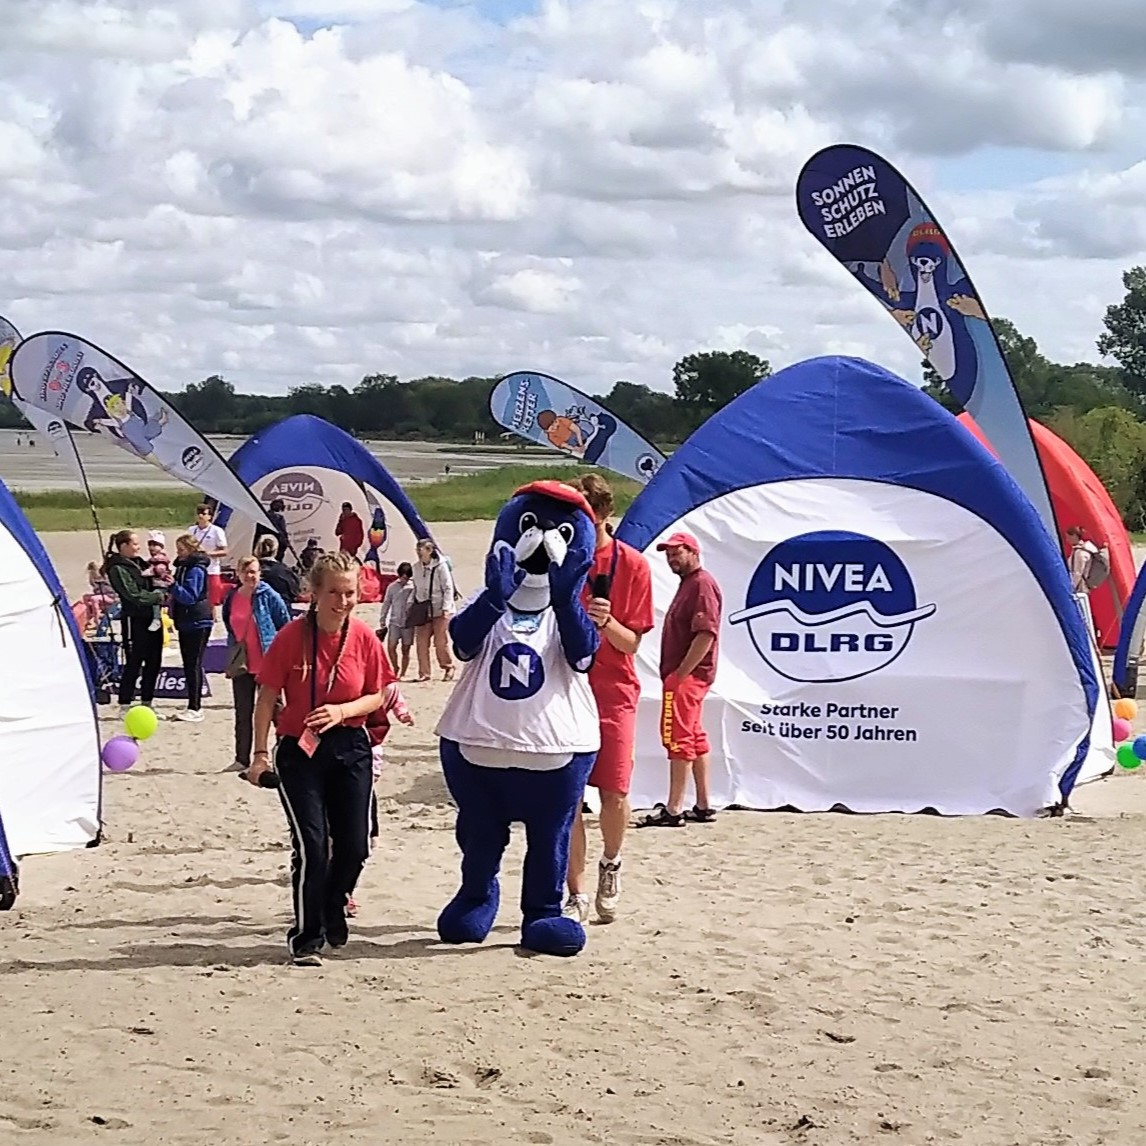 DLRG and Nivea tents and the Nivea mascot, a blue plush sea bear, on the beach